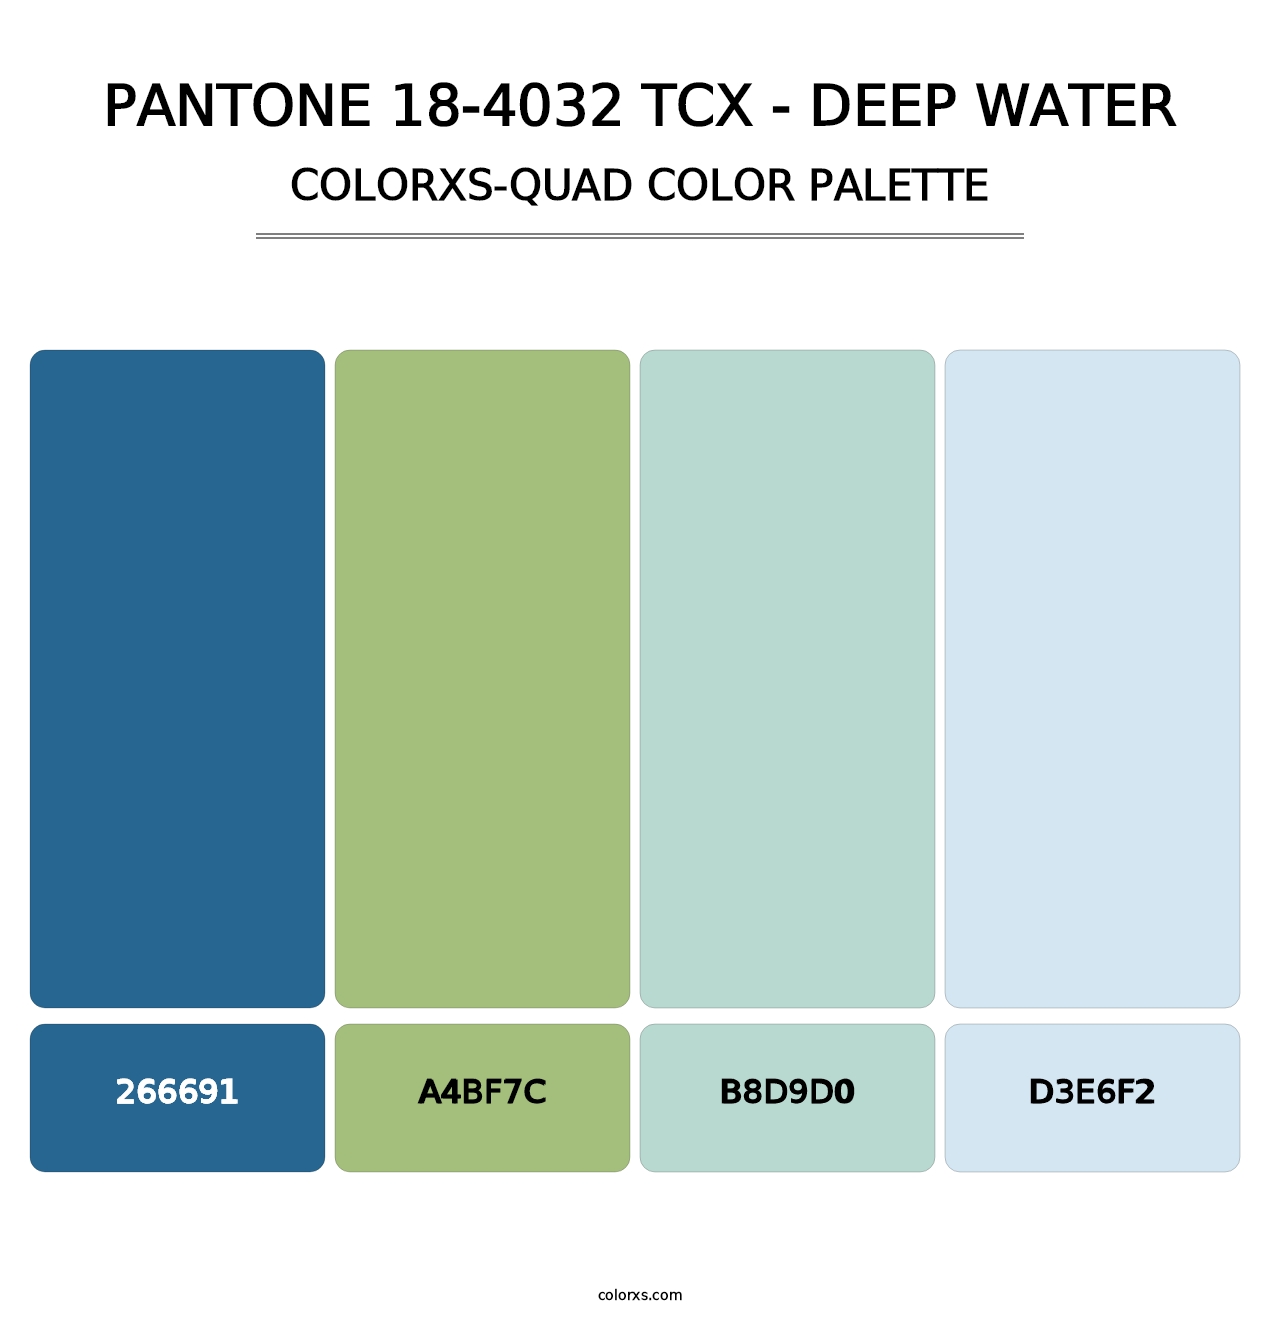 PANTONE 18-4032 TCX - Deep Water - Colorxs Quad Palette